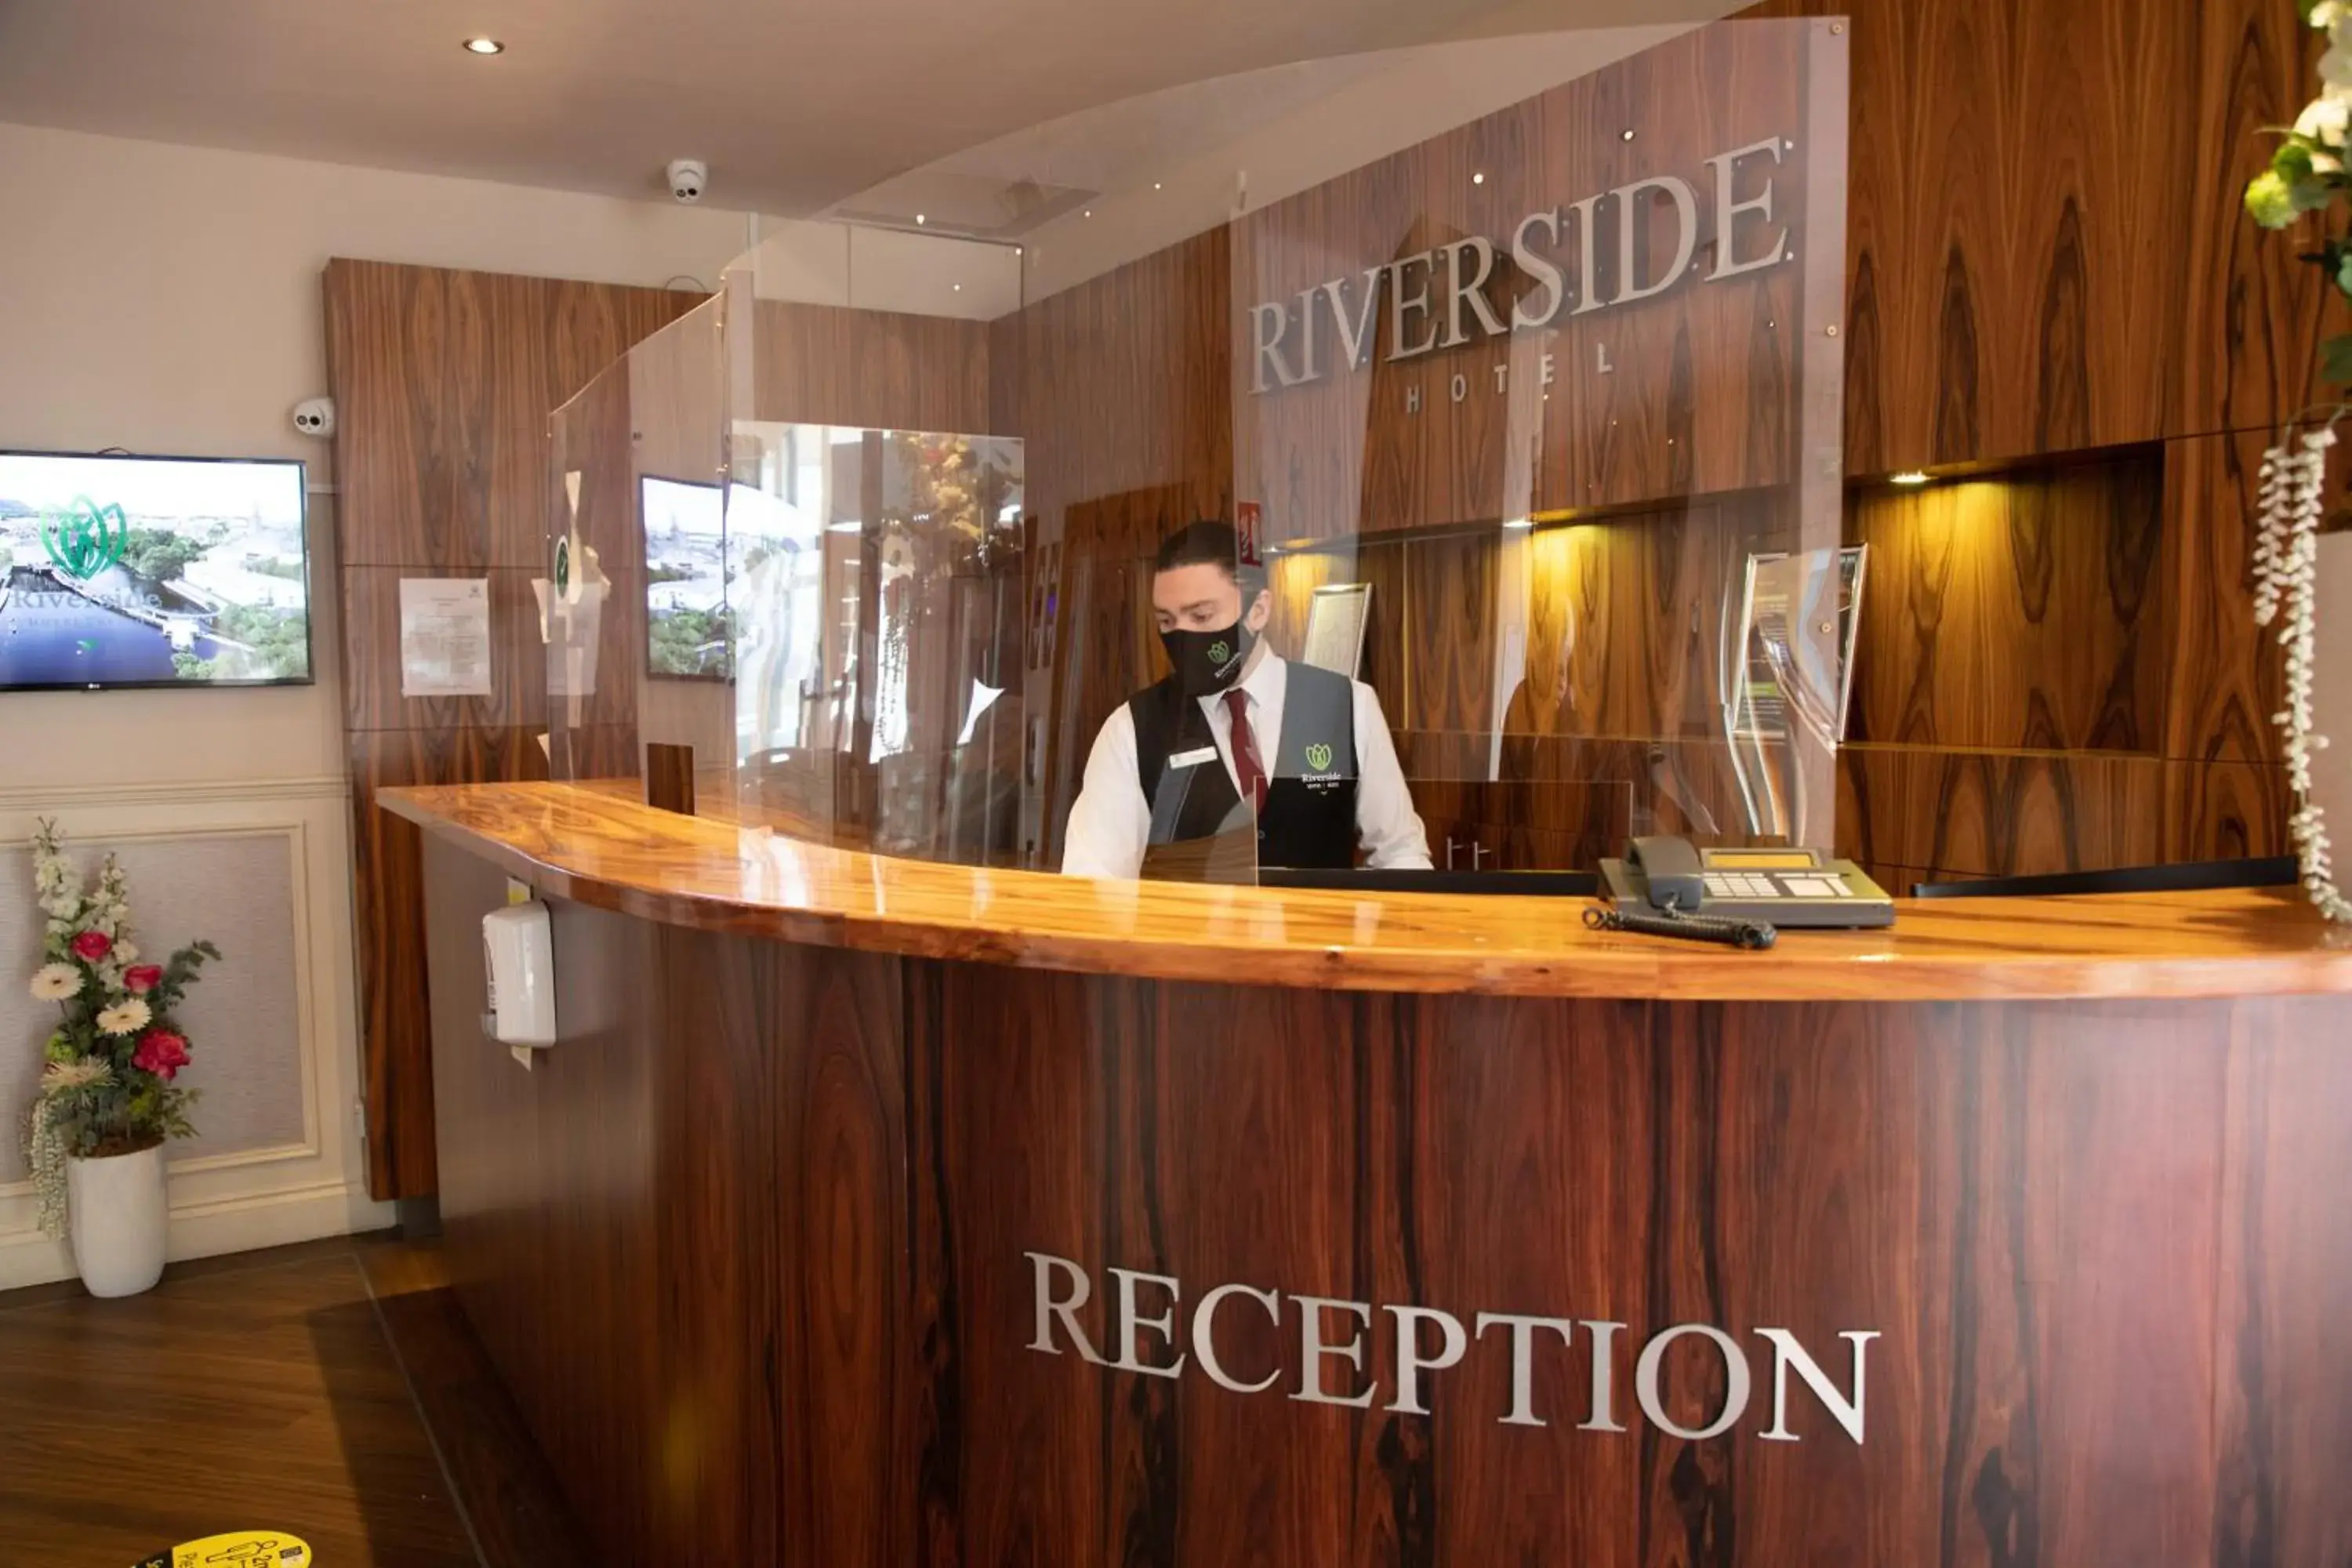 Staff in Riverside Hotel